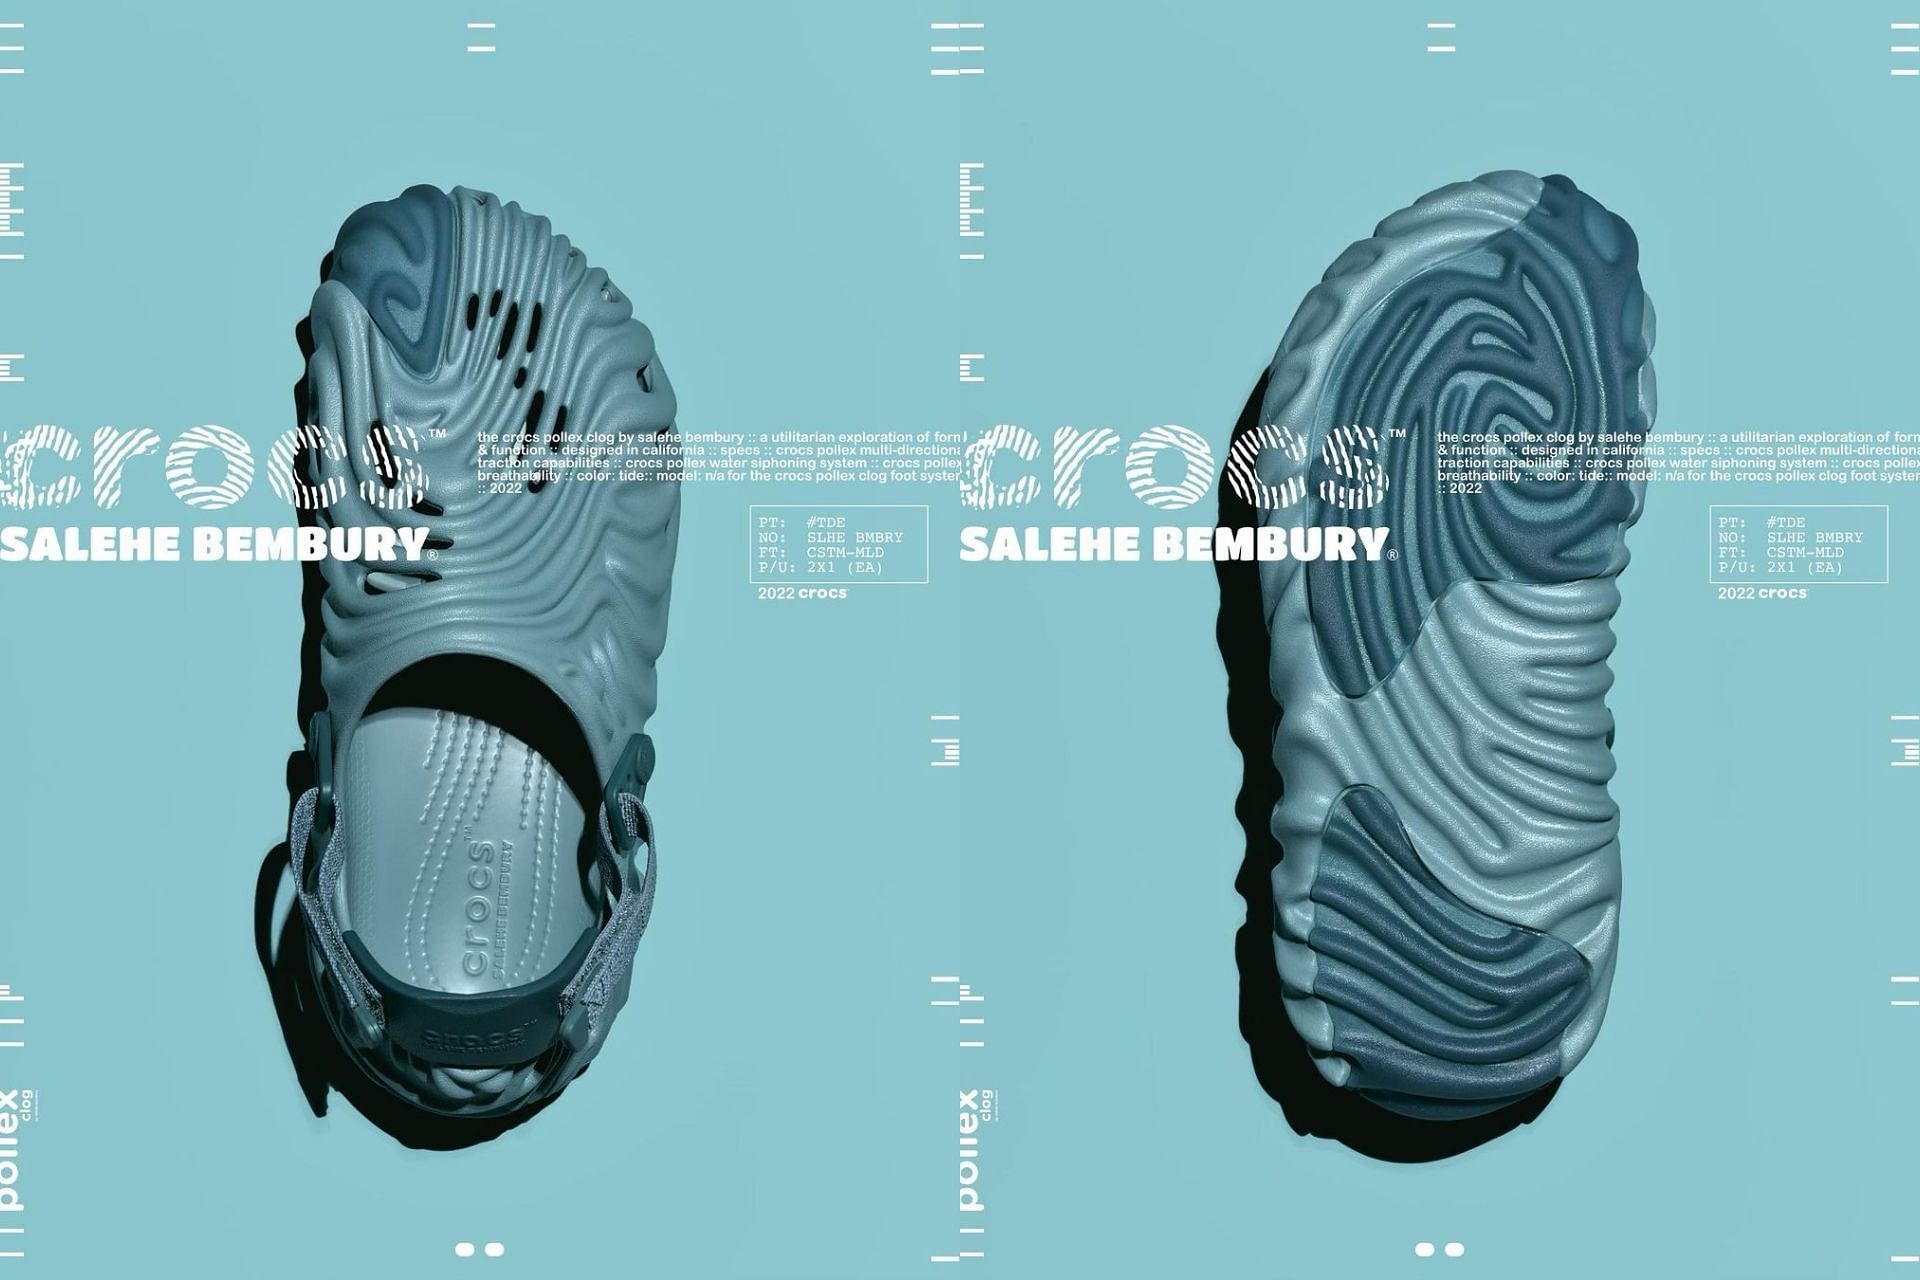 Upcoming Salehe Bembury x Crocs Pollex Clog in Tide colorway (Image via @salehebembury / Instagram)